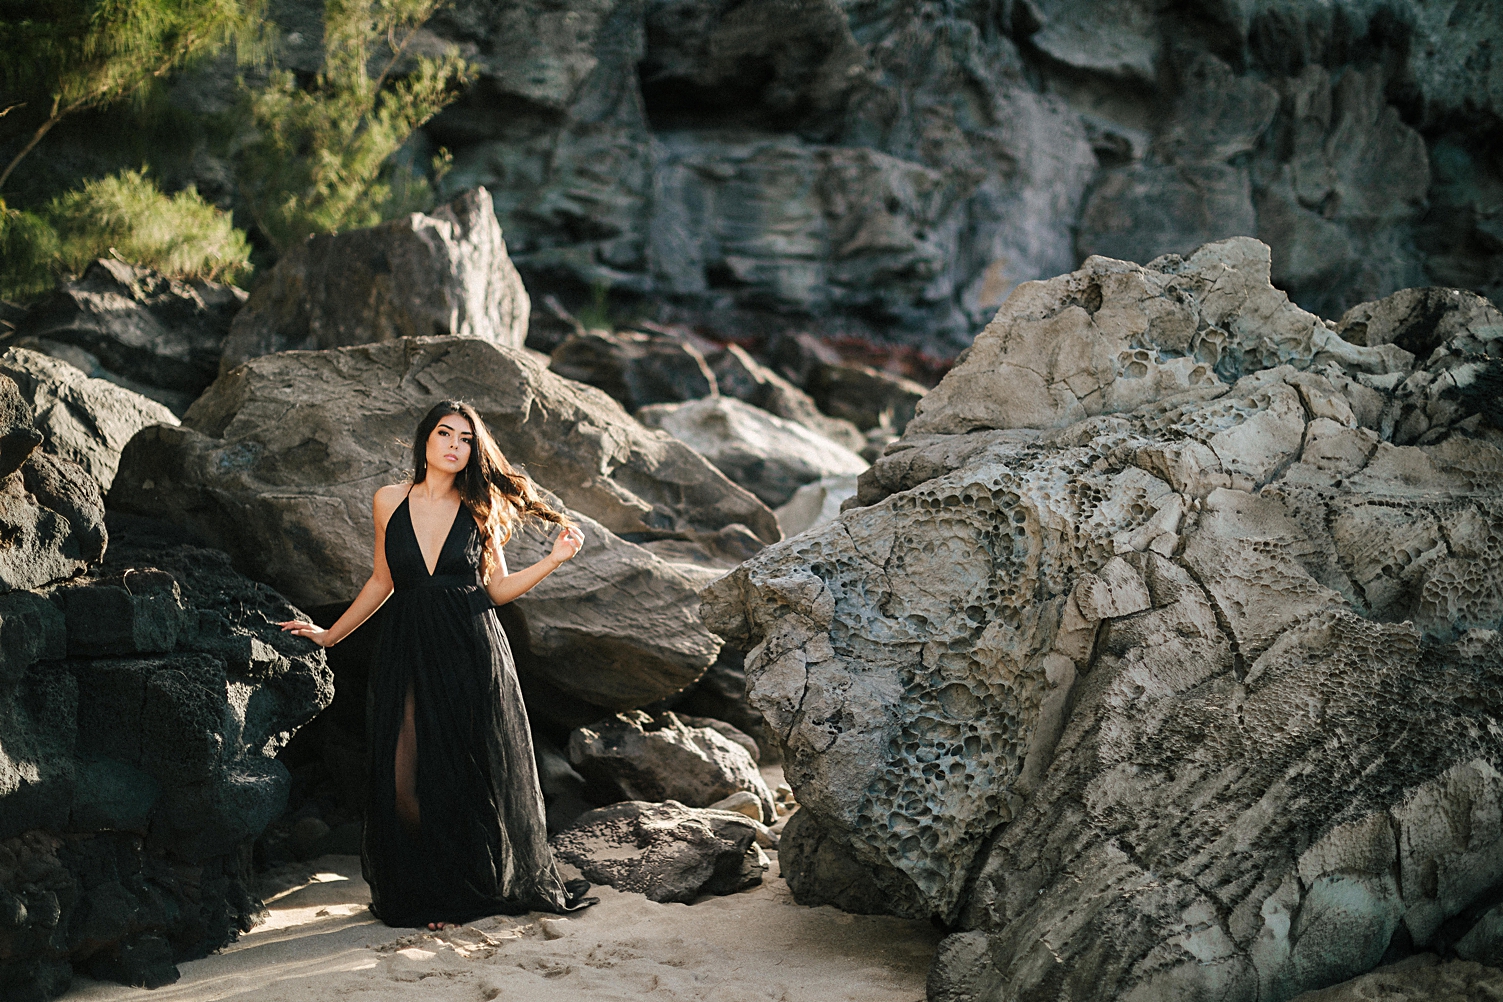 Maui fiancé beach black tule dress rocks